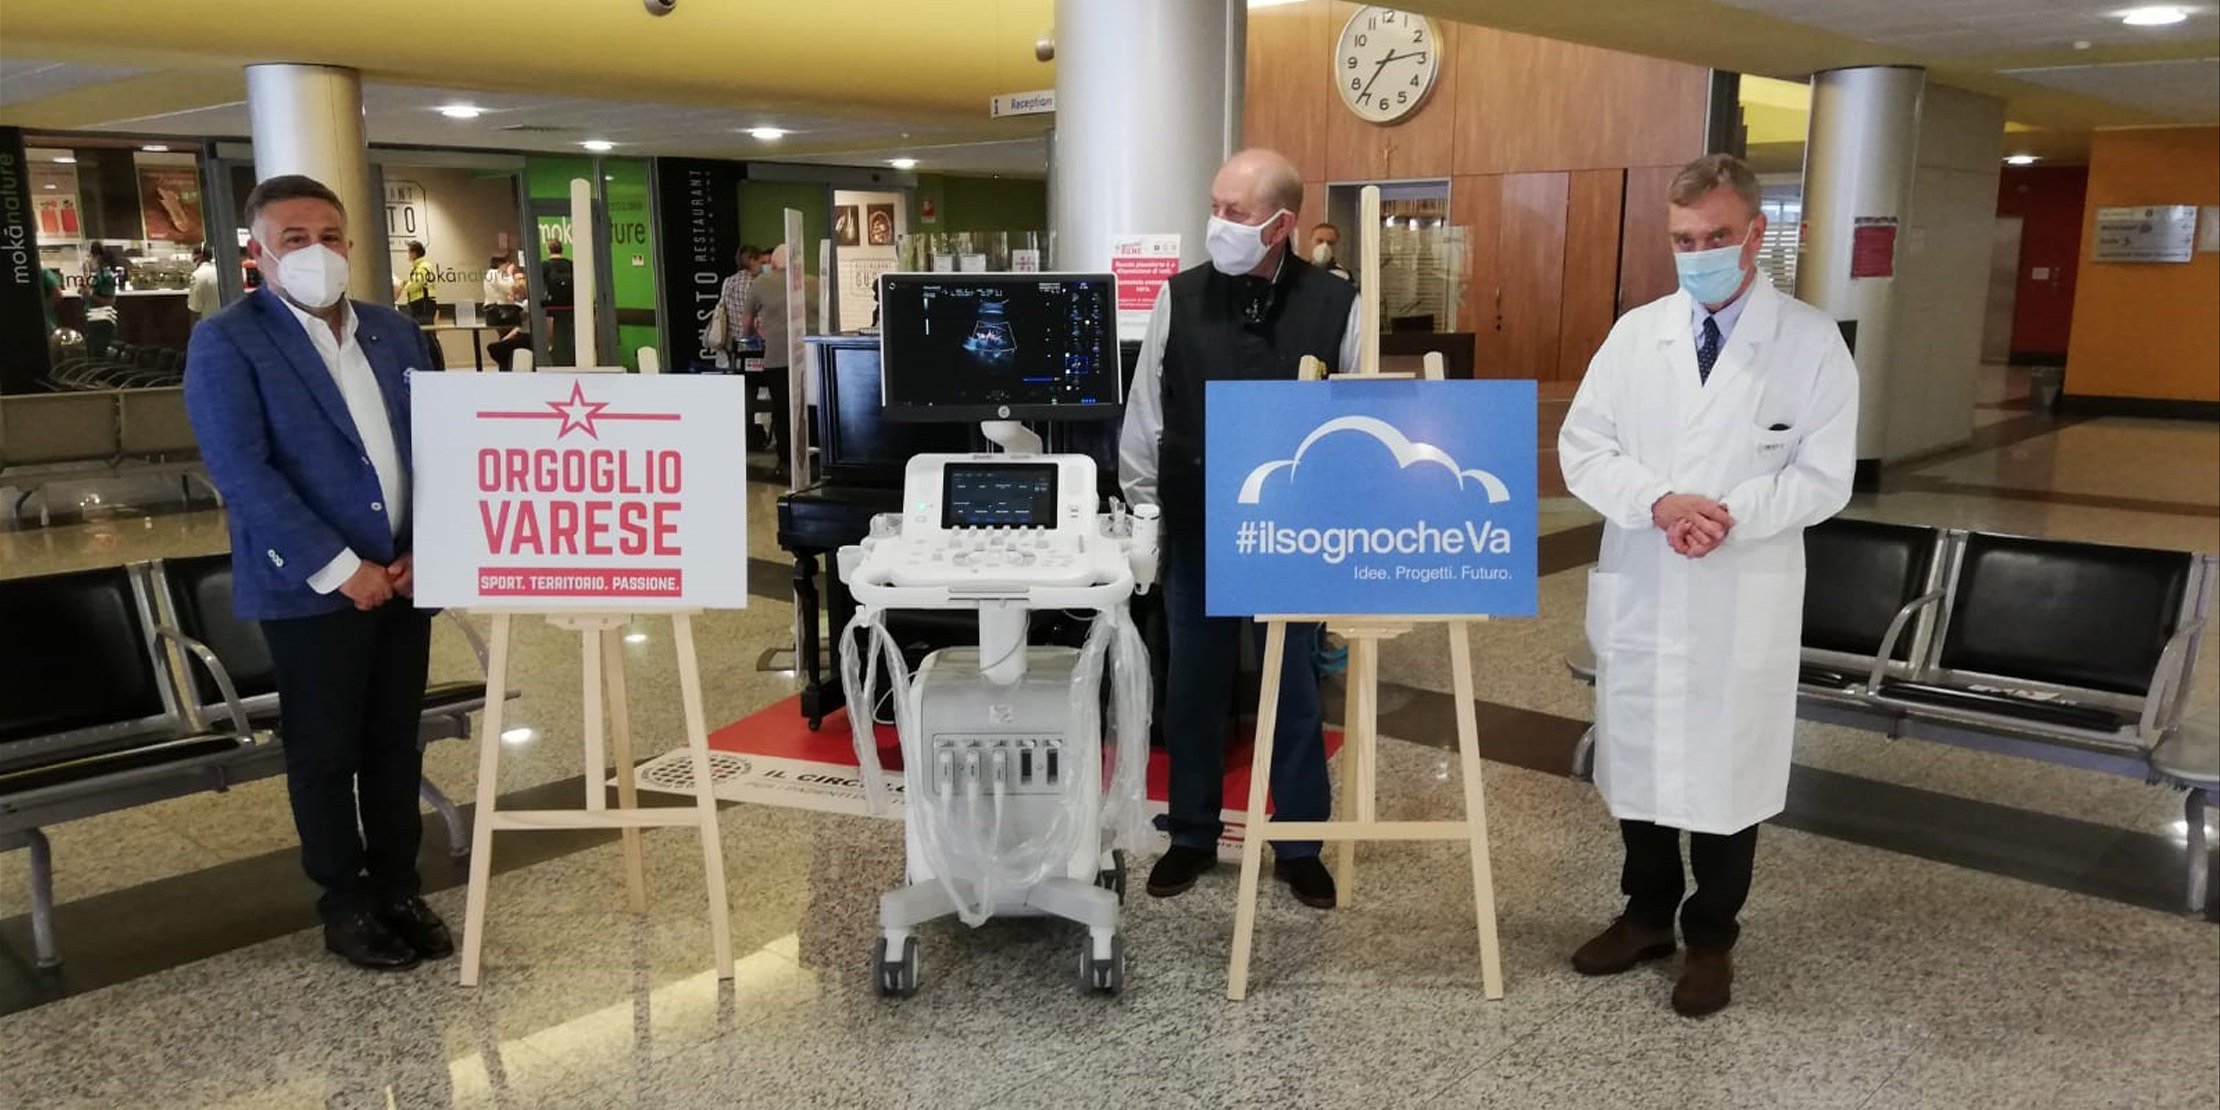 Orgoglio Varese dona un ecografo all’Ospedale di Circolo